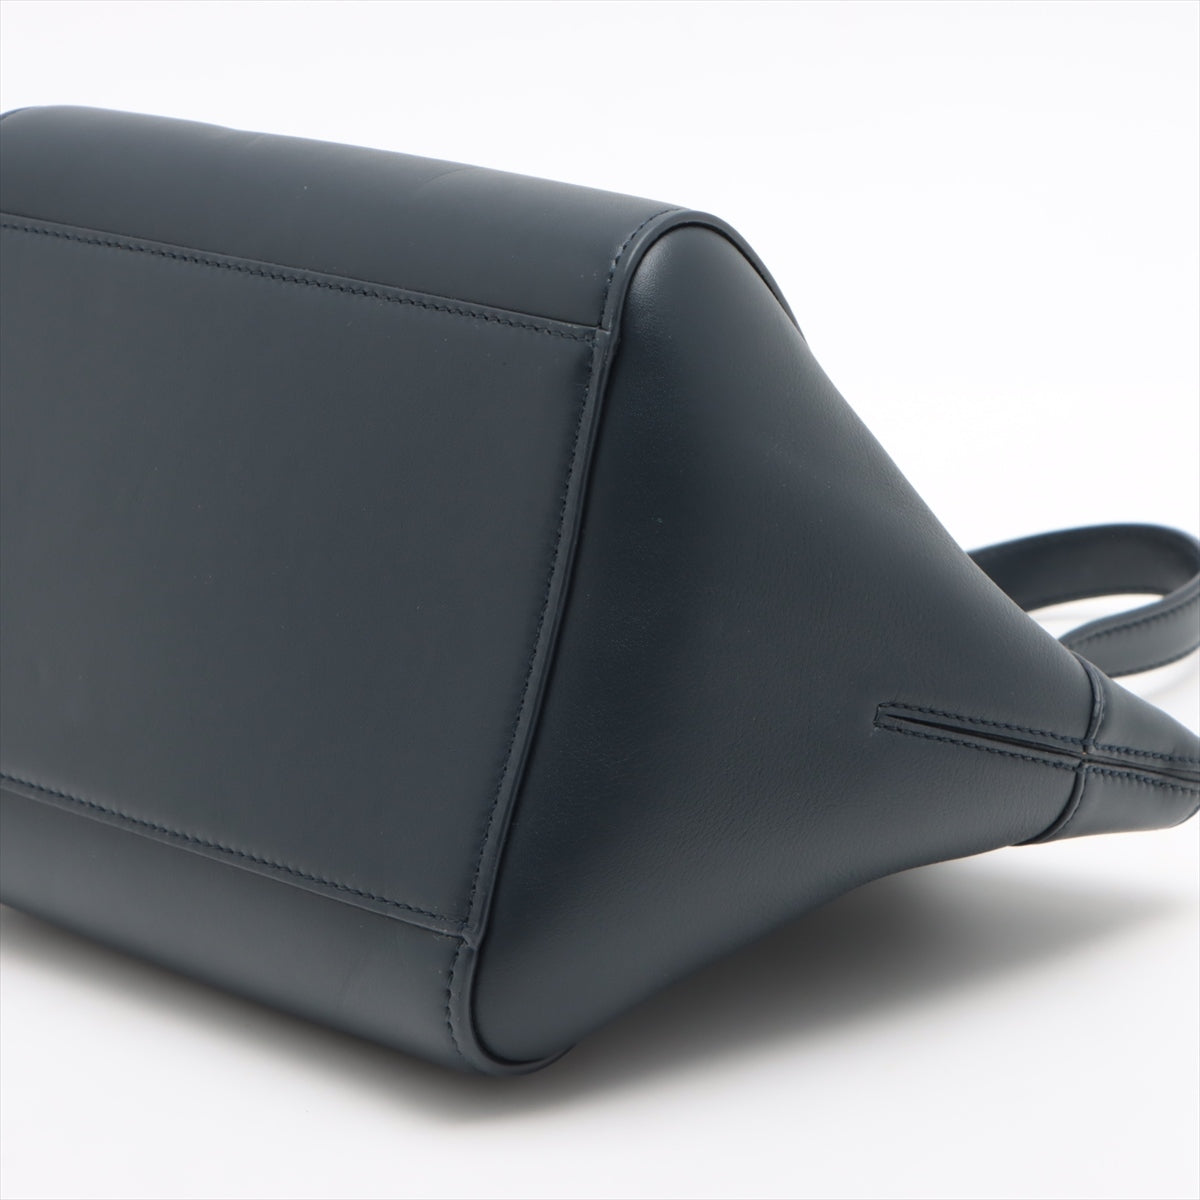 Loewe hammock nuggets Leather 2way handbag Navy blue